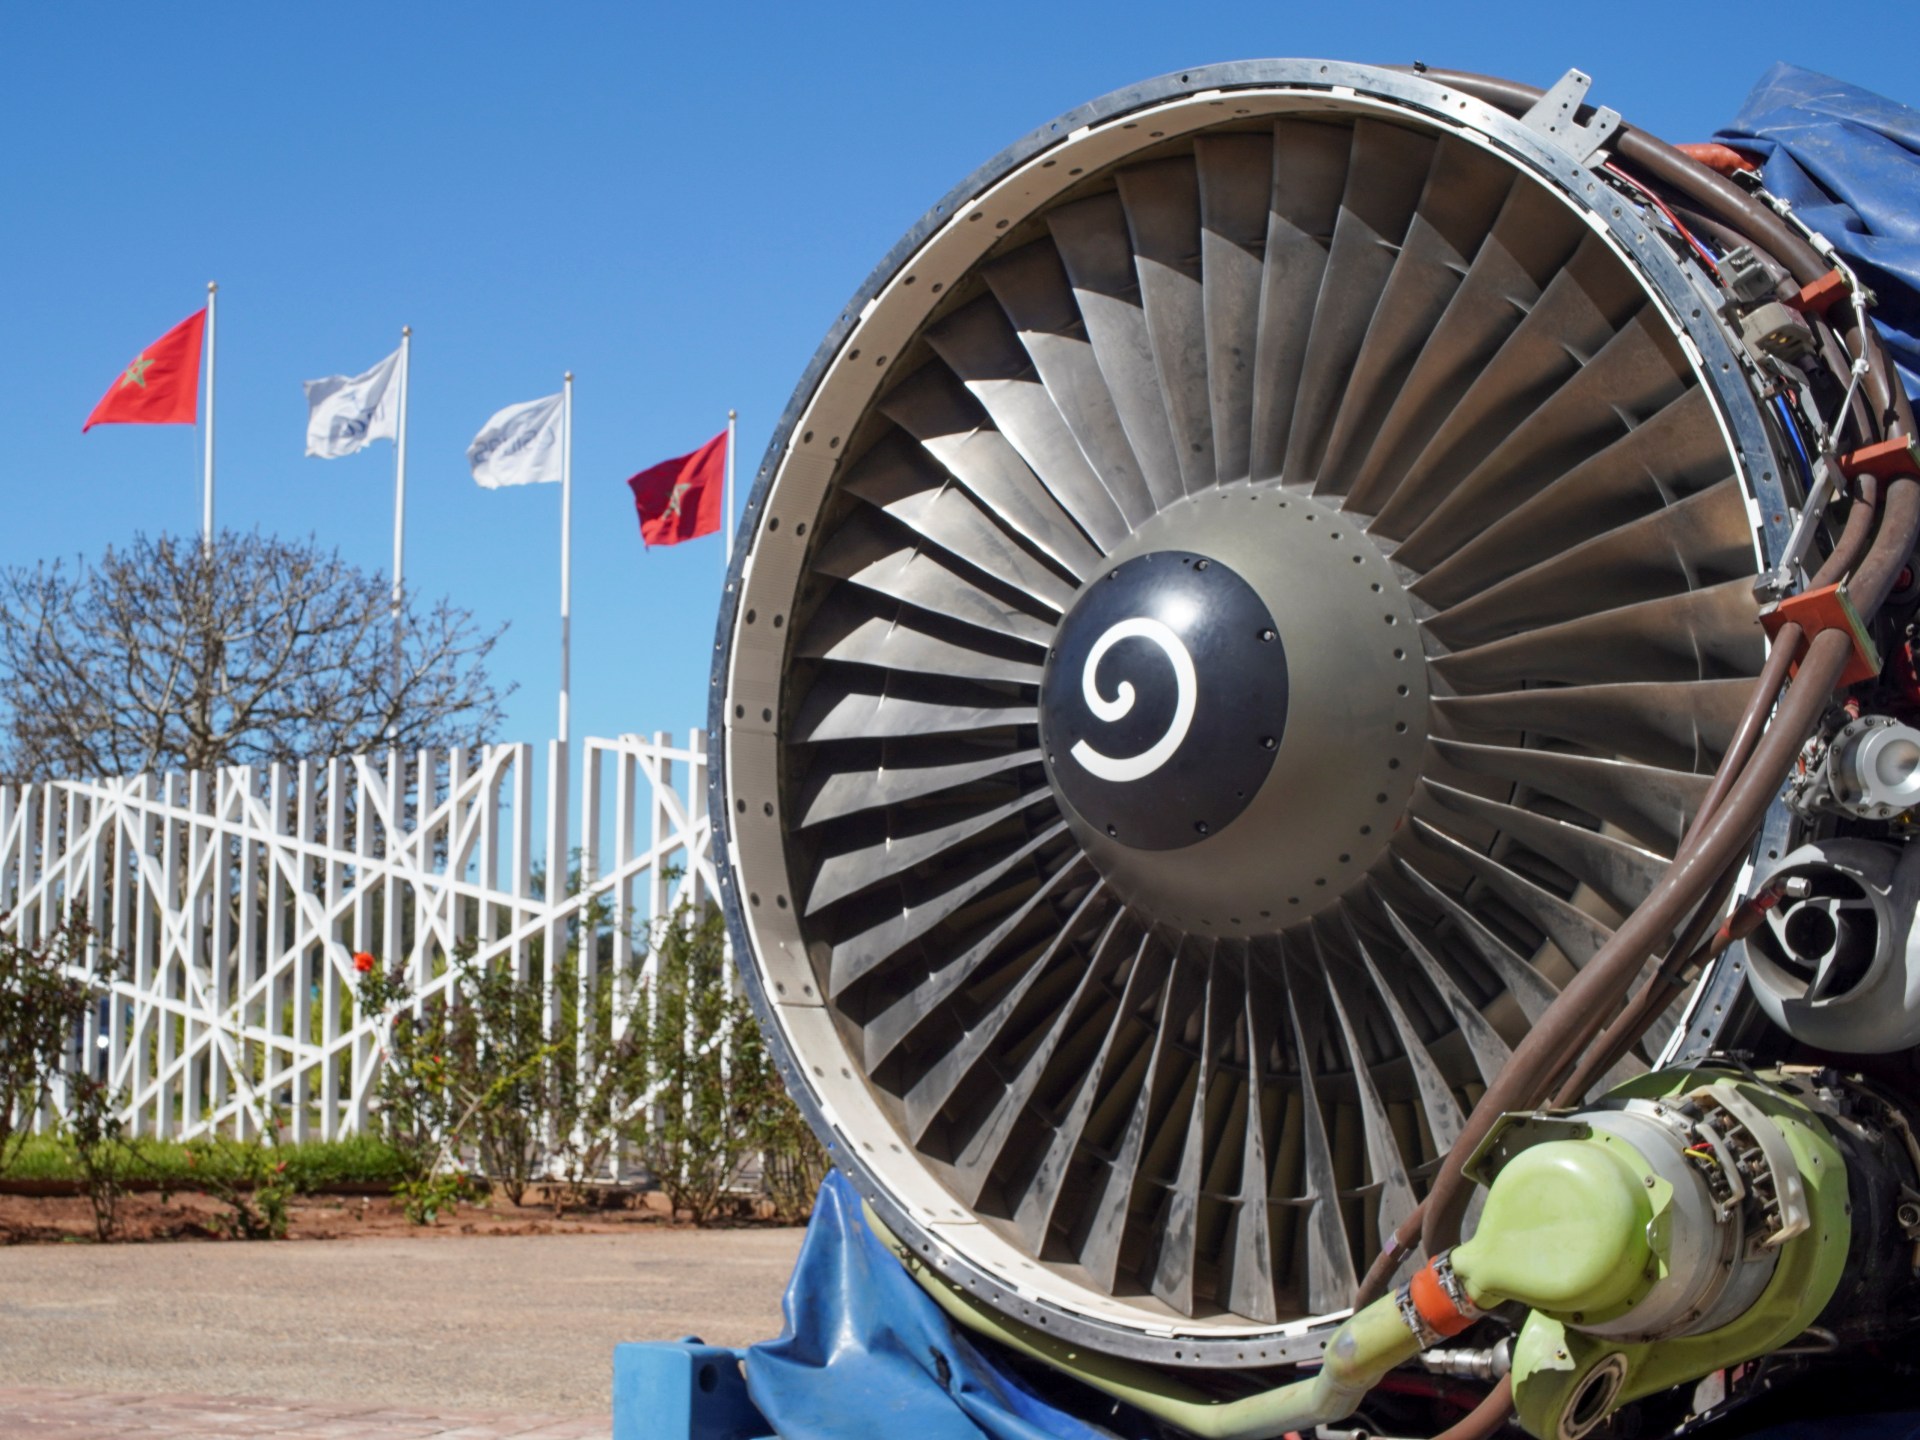 المغرب يسعى للانضمام إلى نادي مصنعي الطائرات العالمي | اقتصاد – البوكس نيوز